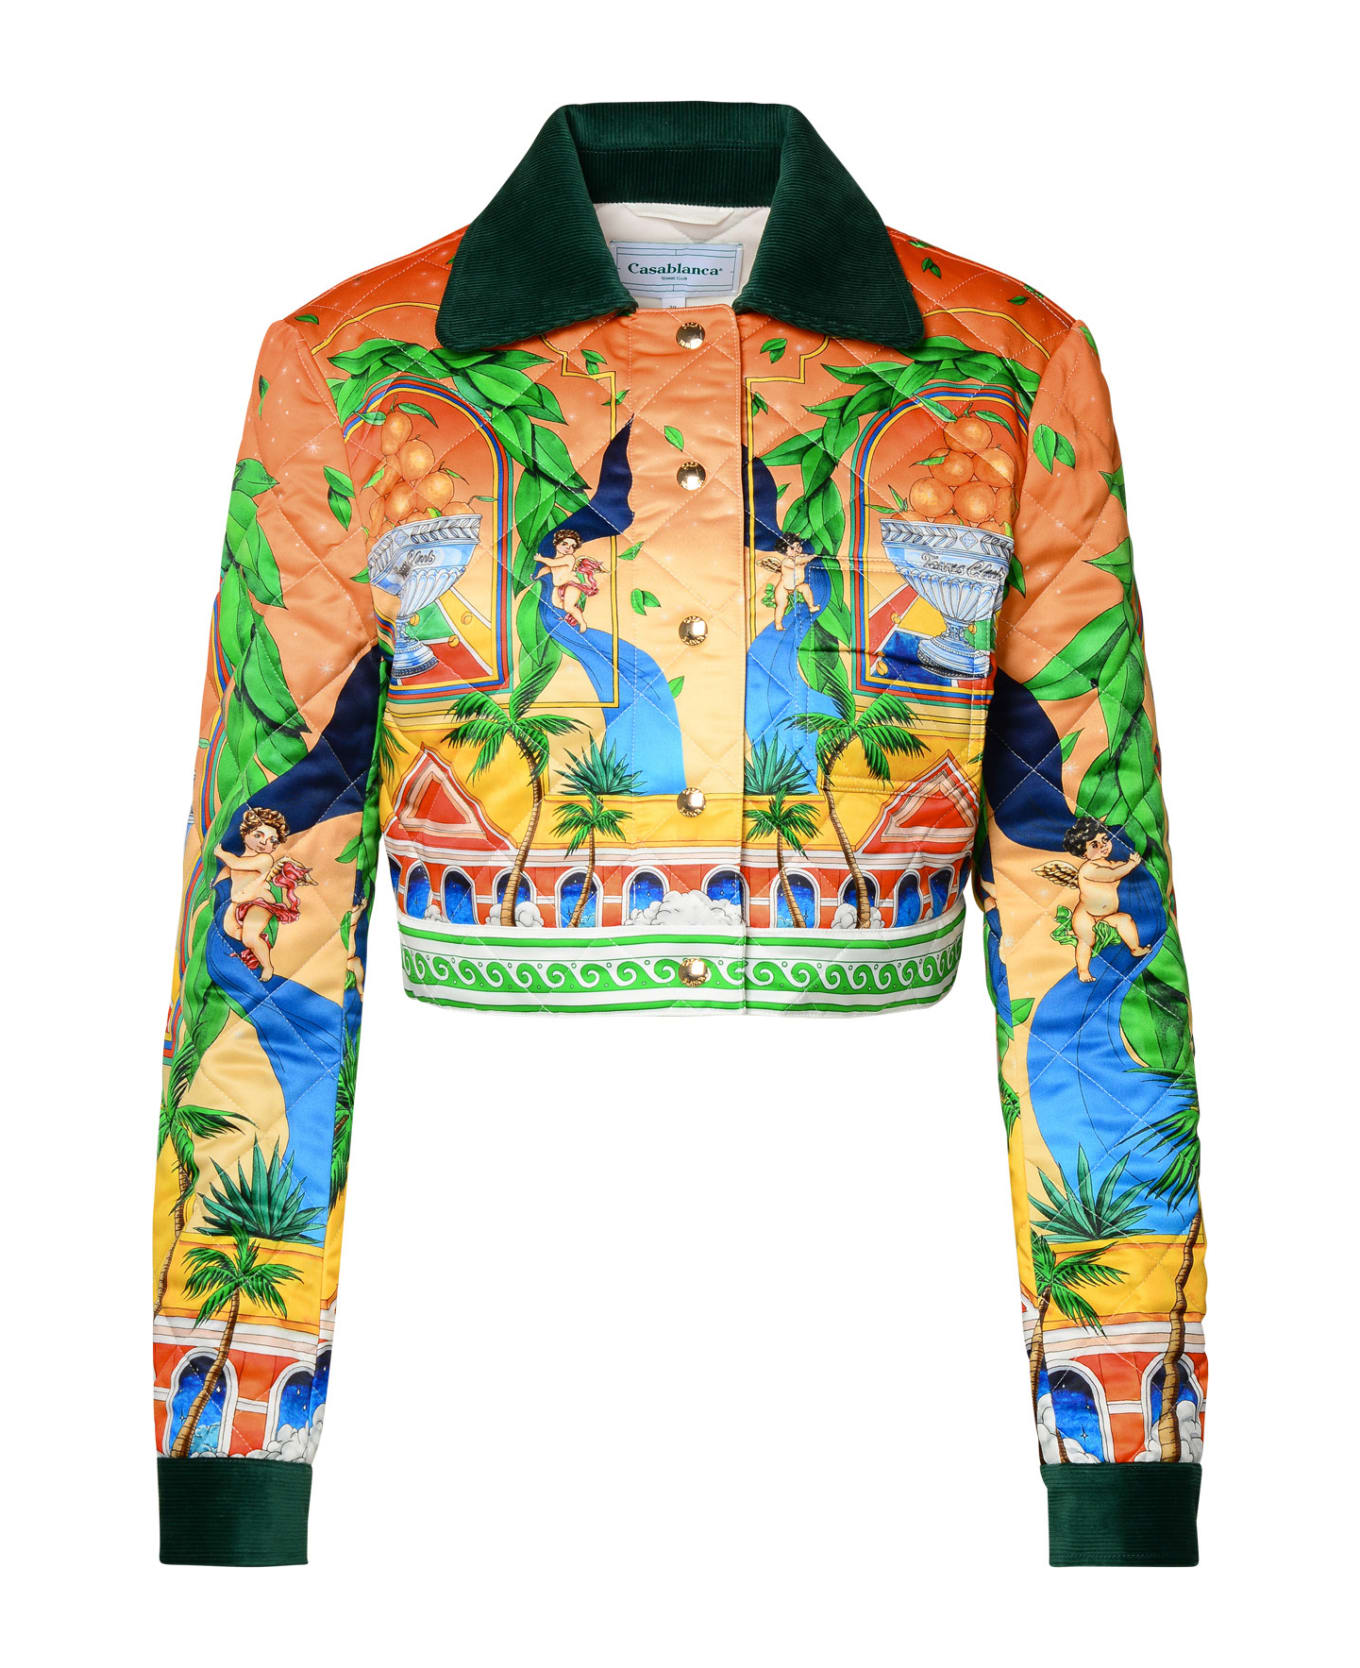 Casablanca Multicolor Polyester Jacket - Multicolor